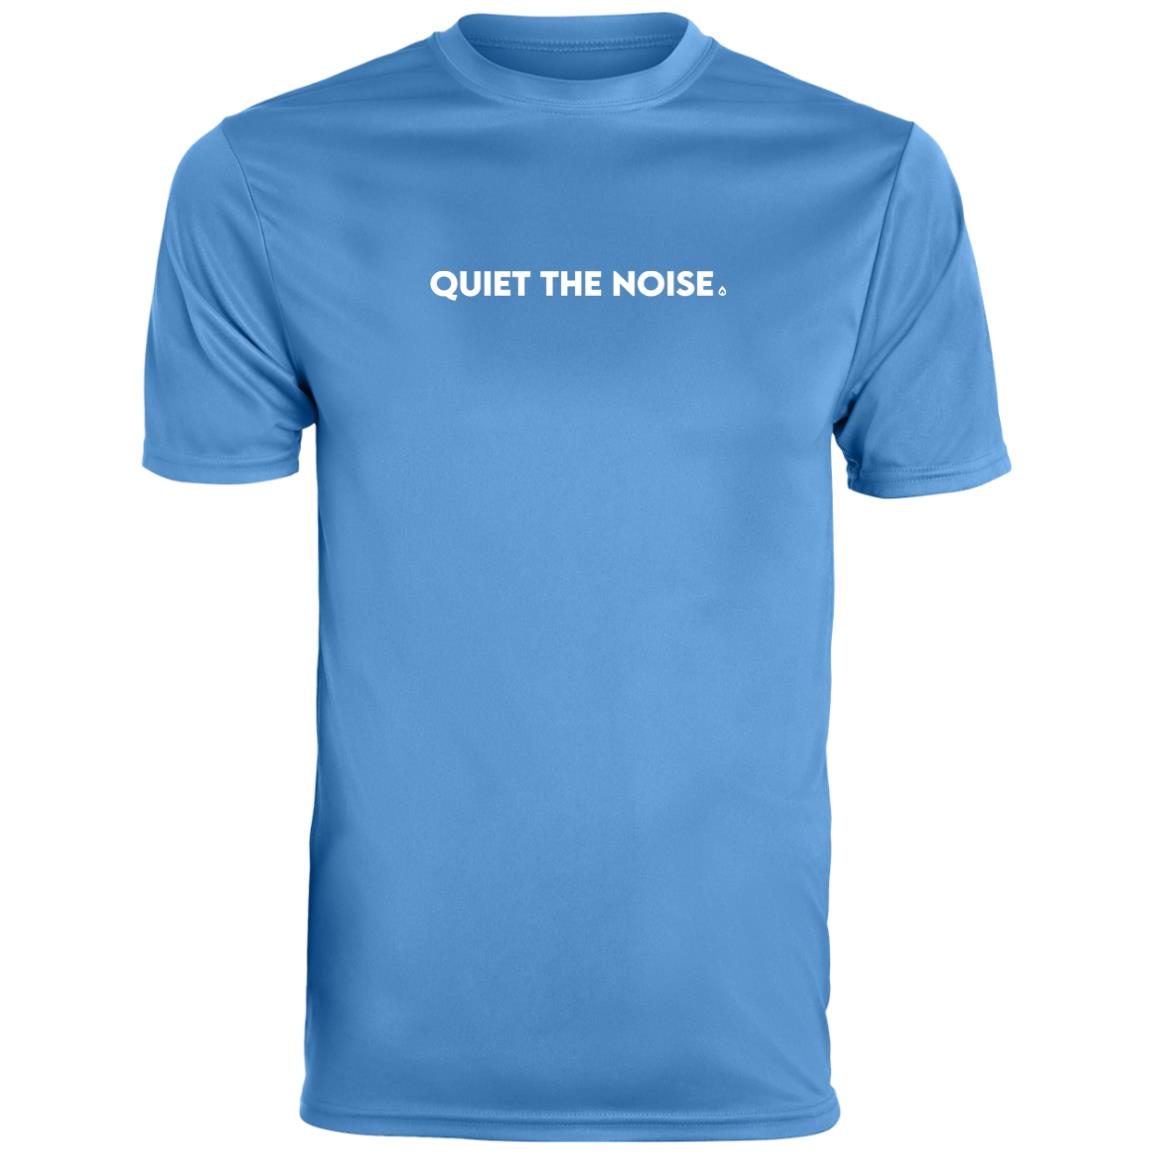 Quiet The Noise Men's Performance T-Shirt